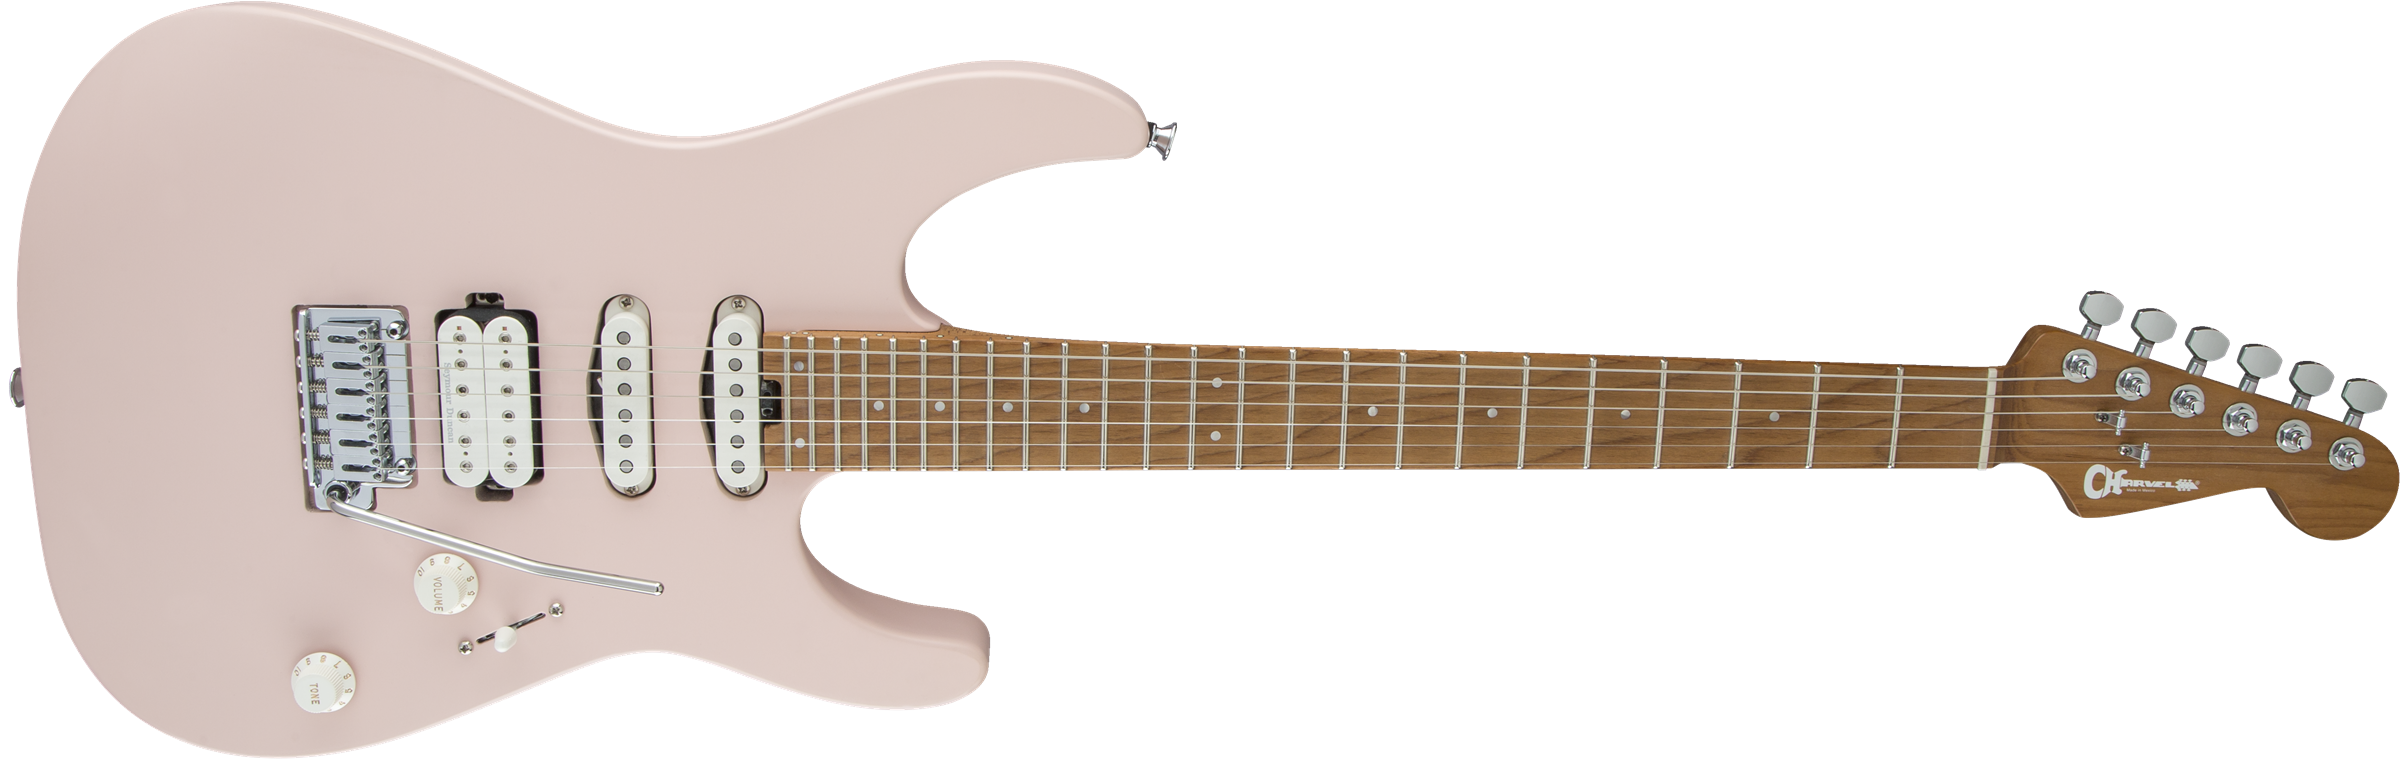 Charvel Pro-mod Dk24 Hss 2pt Cm Trem Mn - Satin Shell Pink - Str shape electric guitar - Variation 2